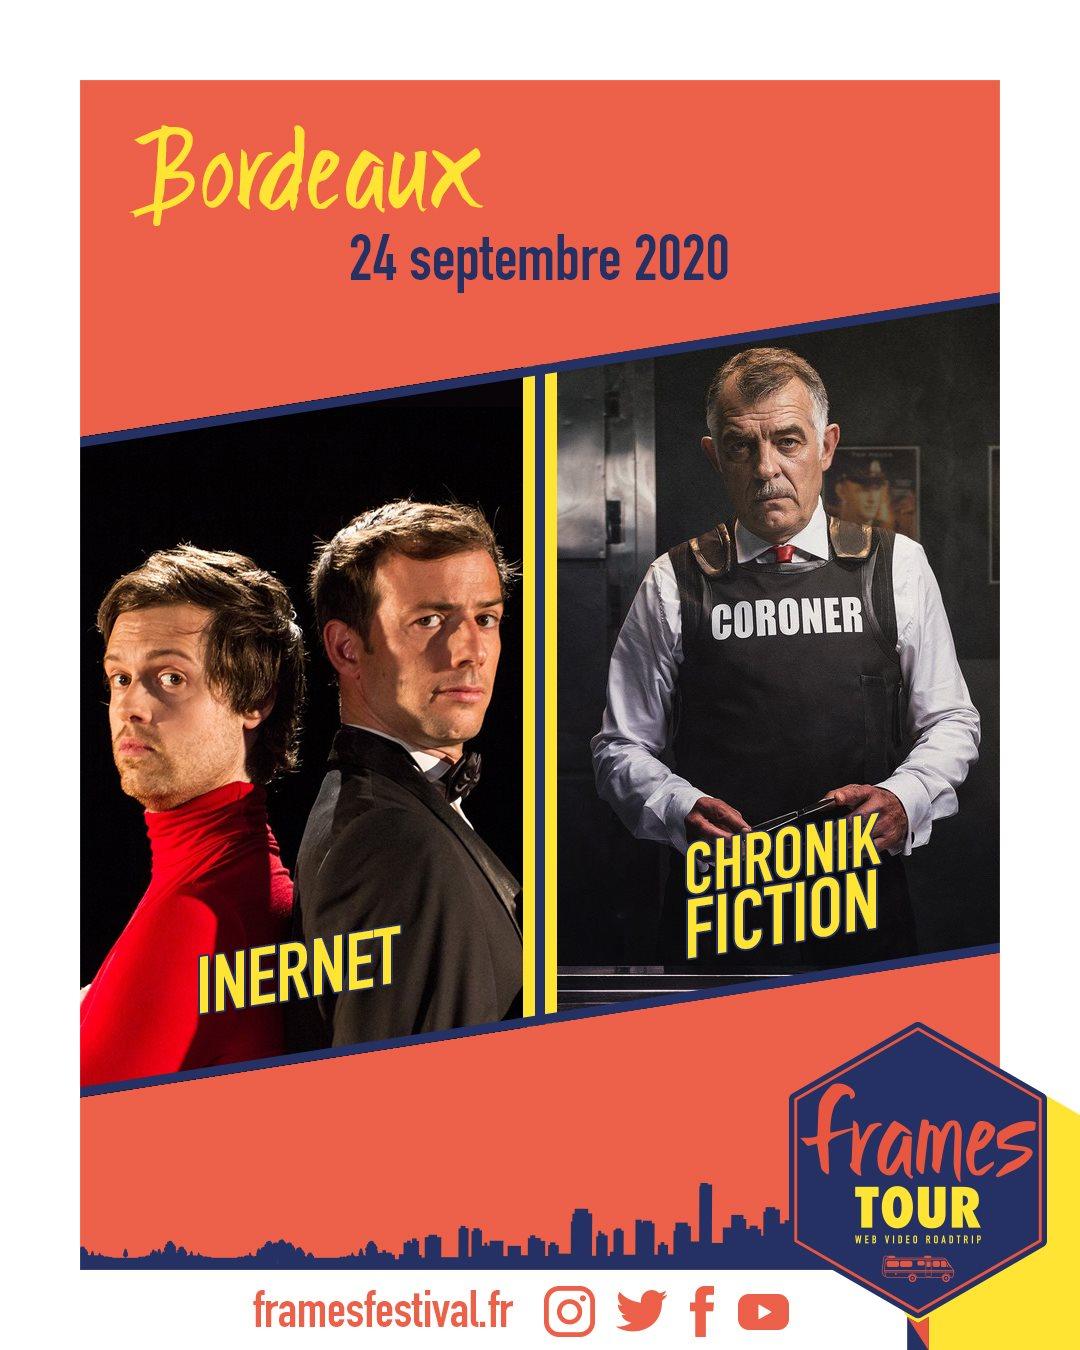 Frames 2020, programmation Bordeaux avec les chaînes Youtube Inernet et Chronik Fiction